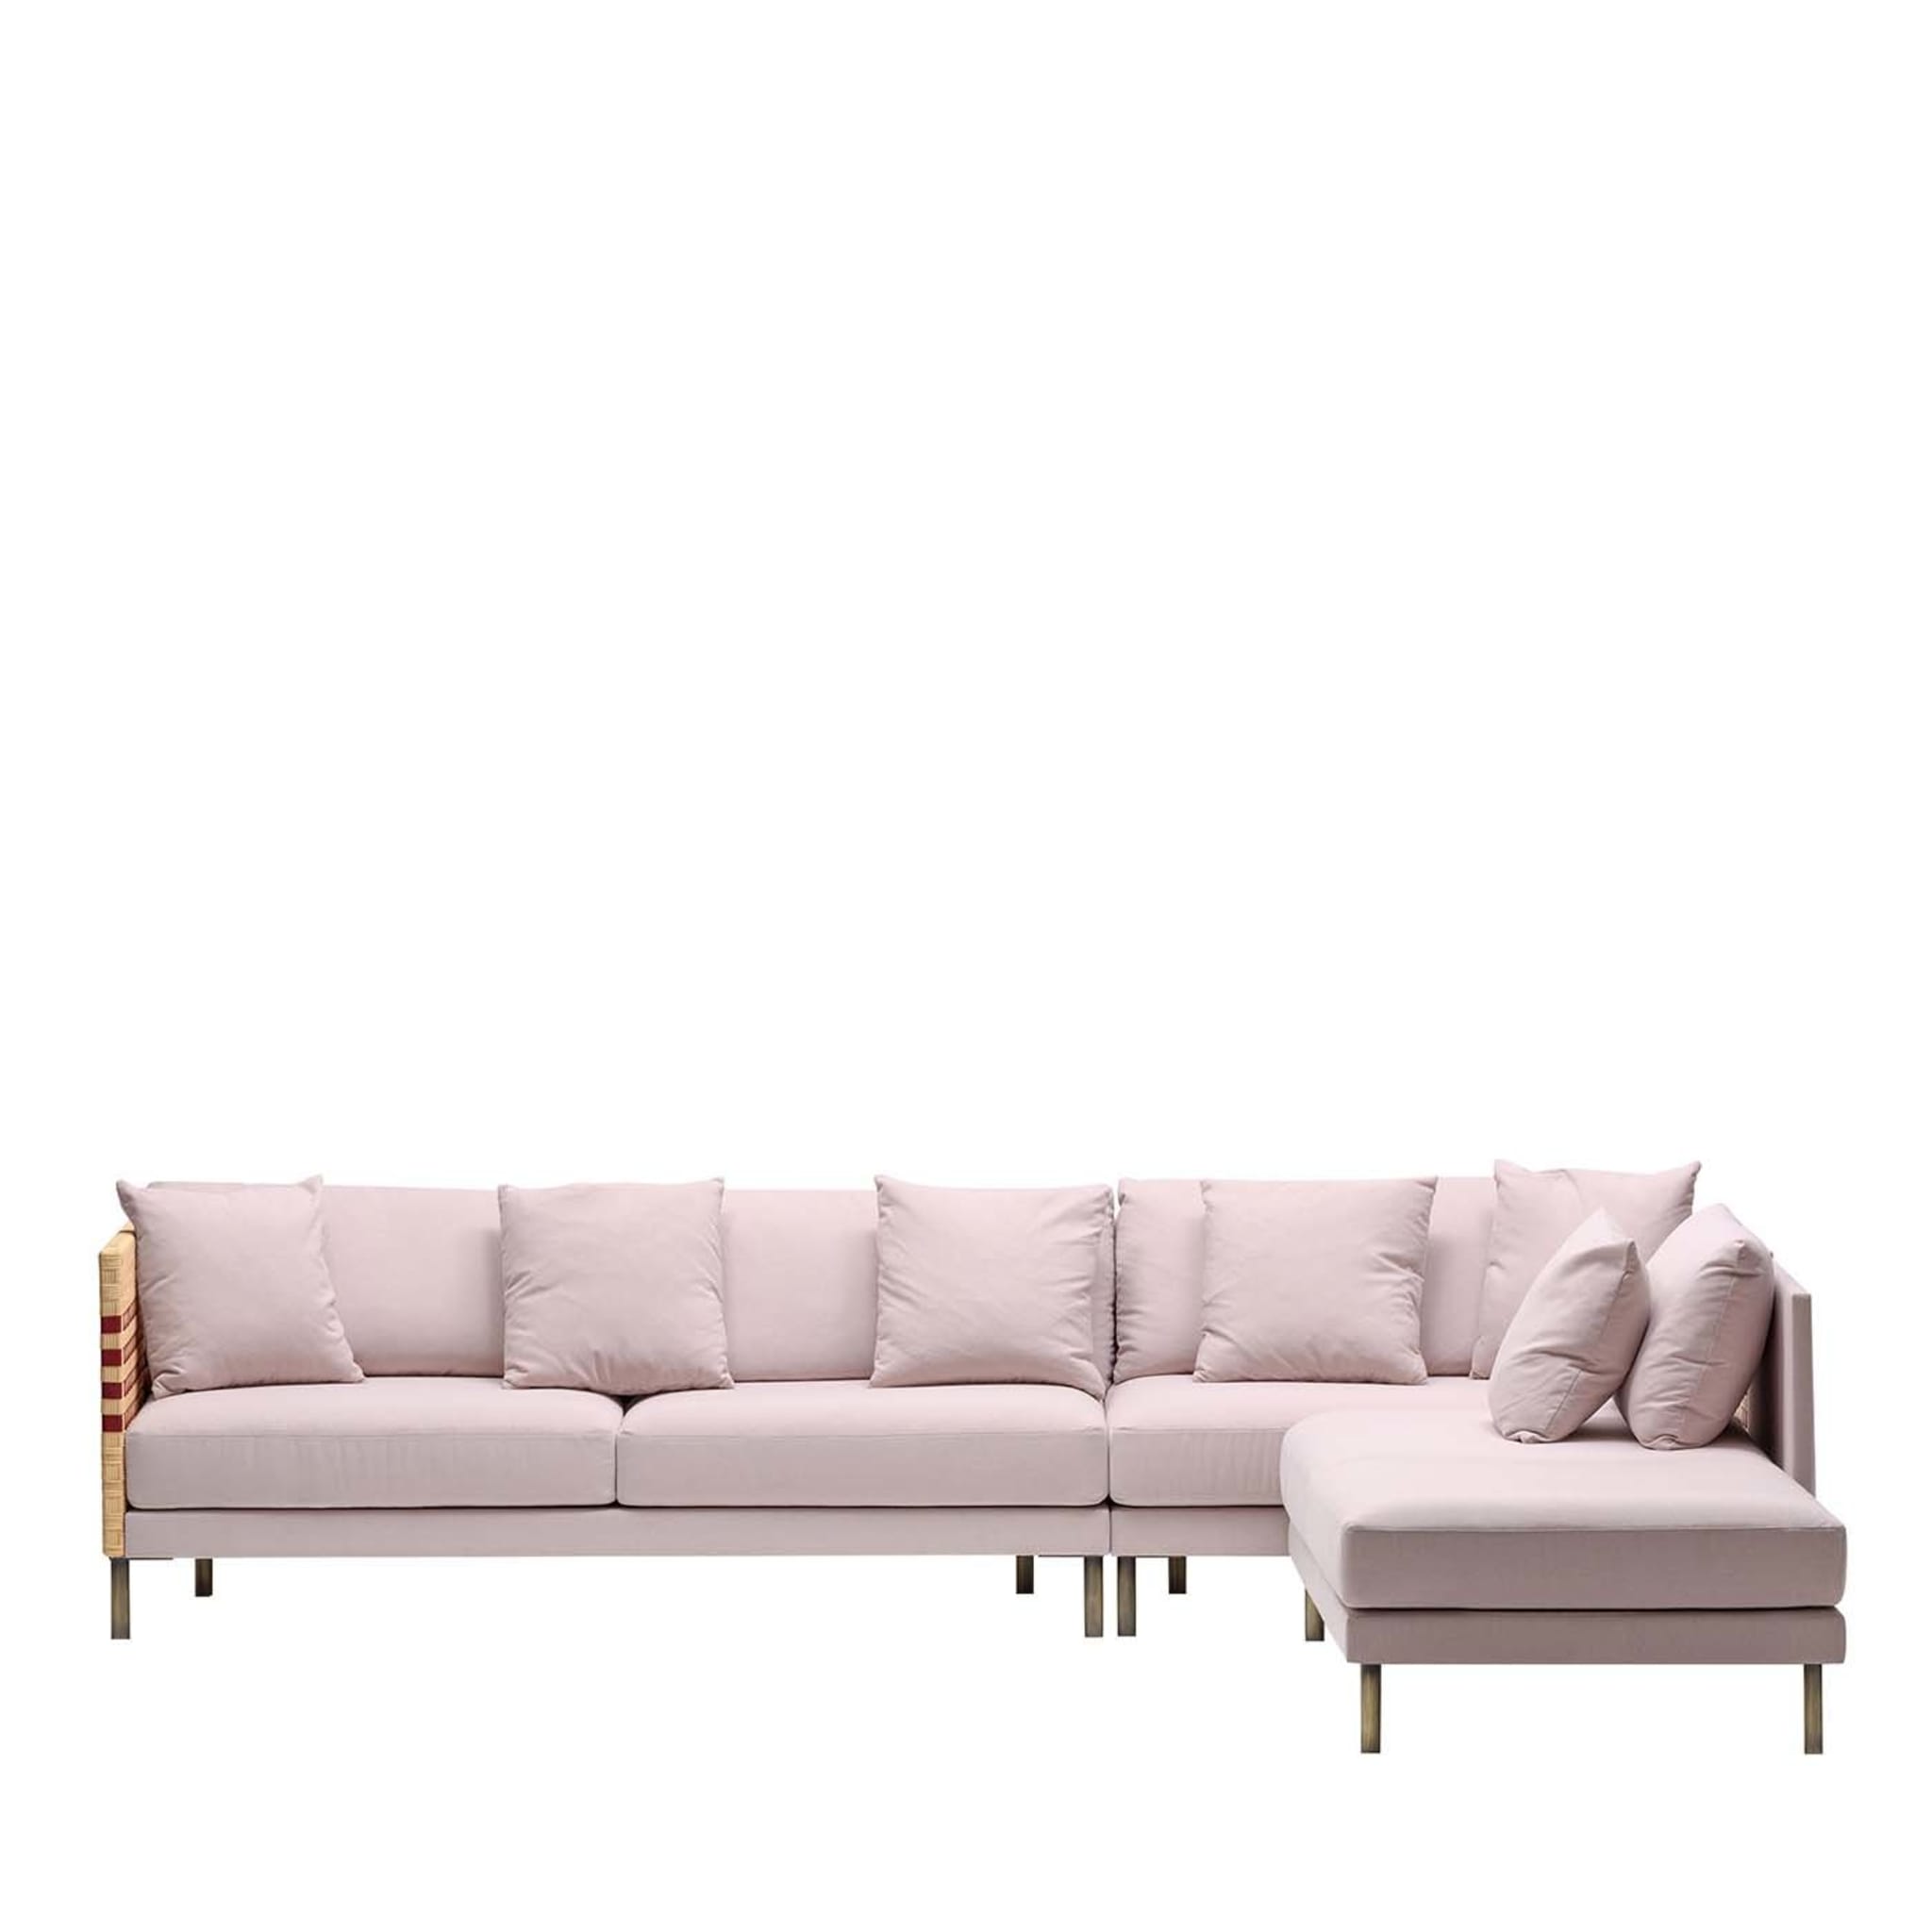 Milli Sofa by Angeletti Ruzza Design - Main view